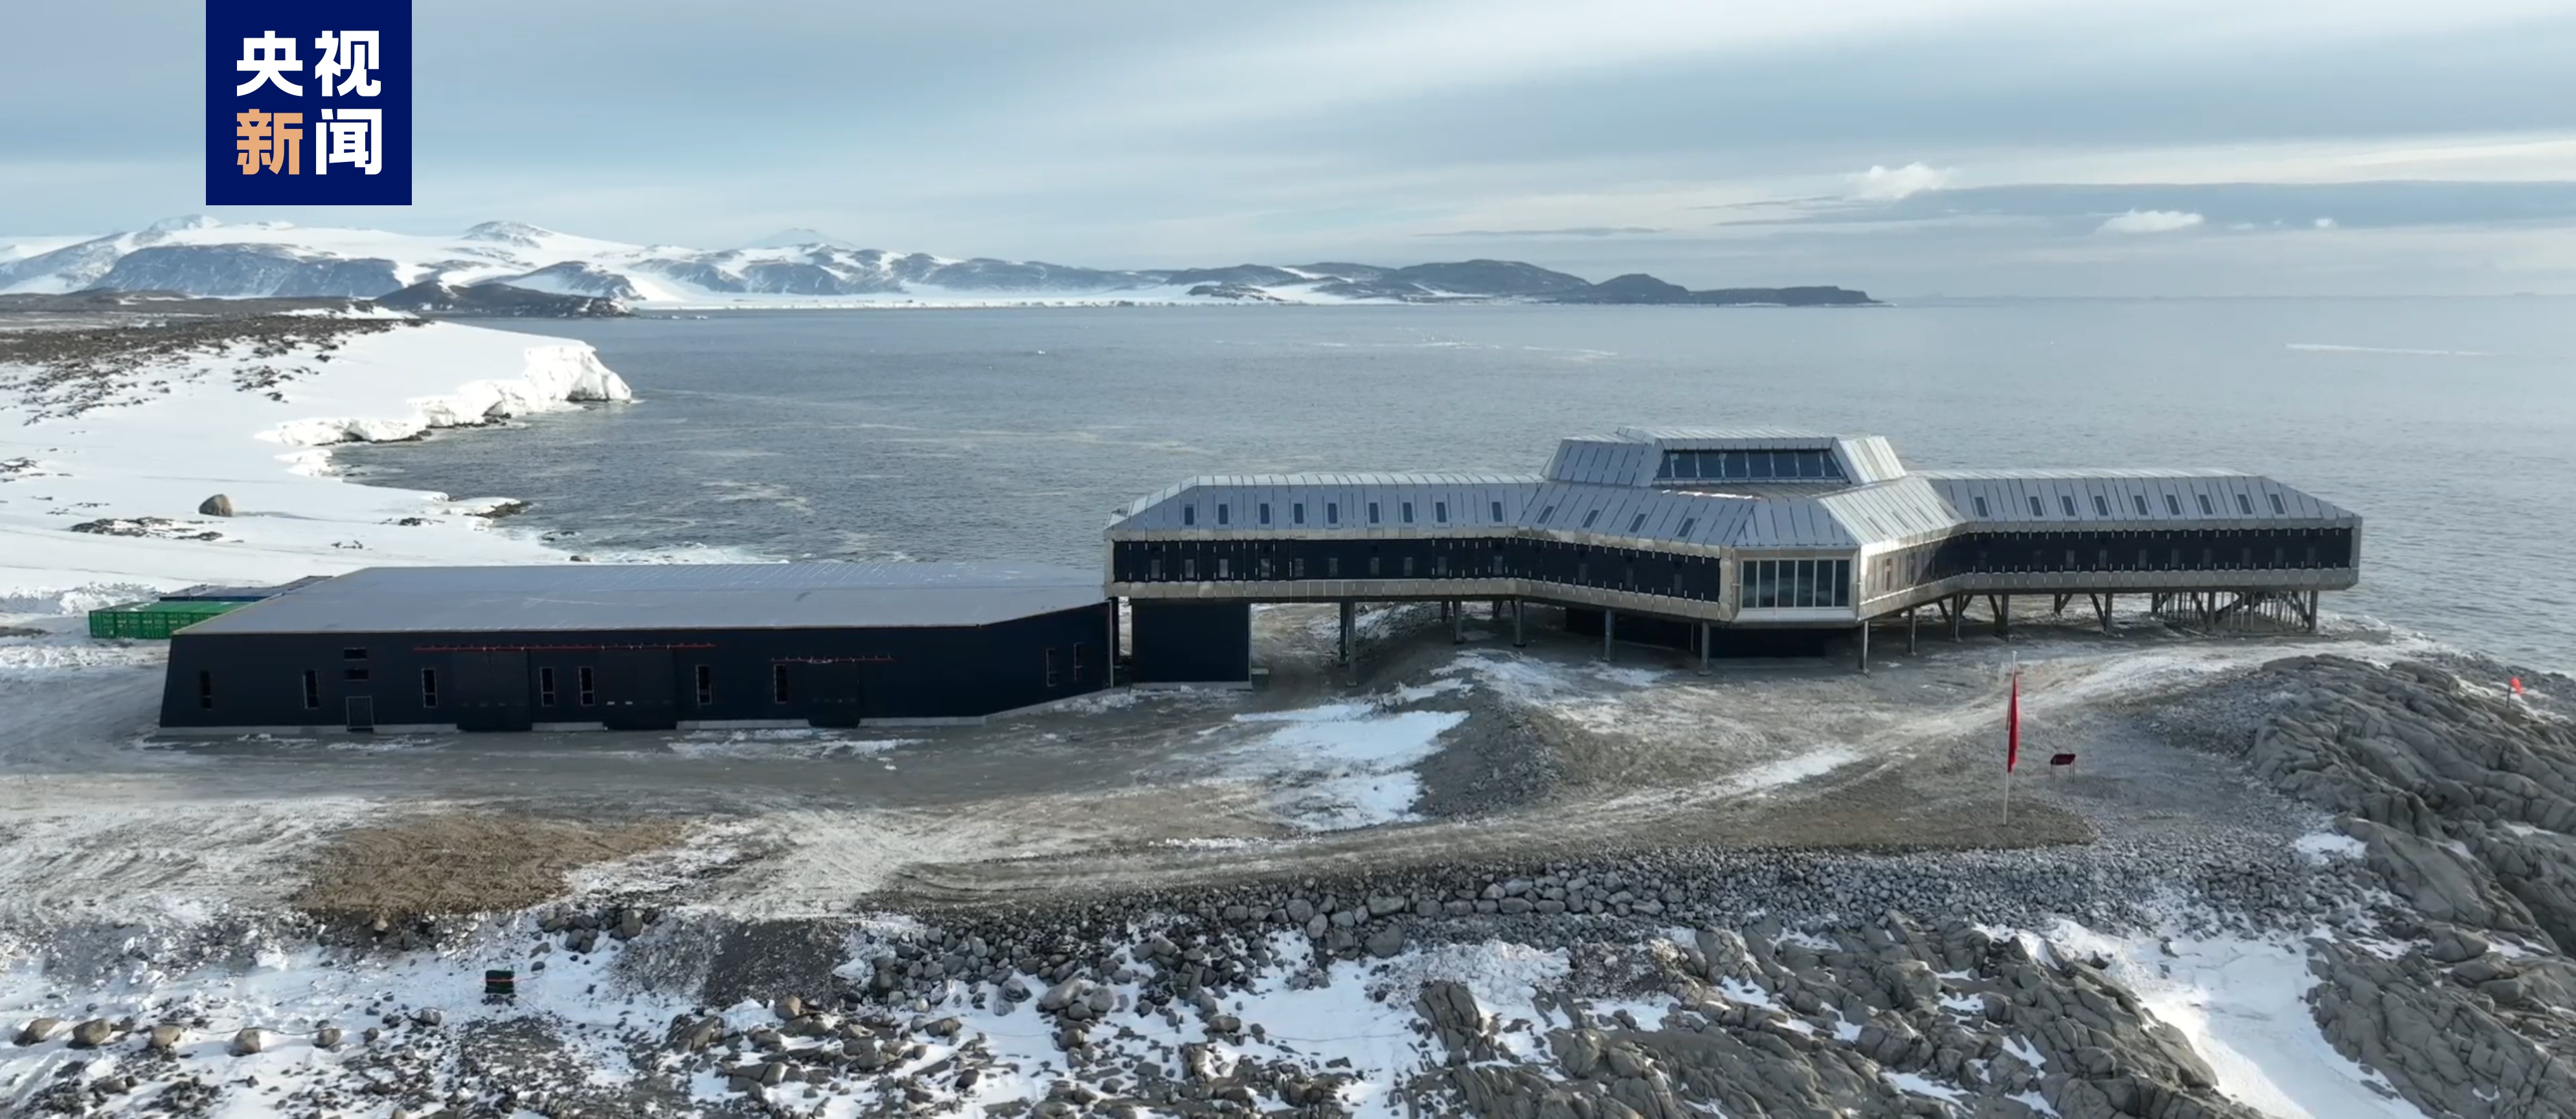 我国第五座南极考察站——秦岭站今天正式开站1